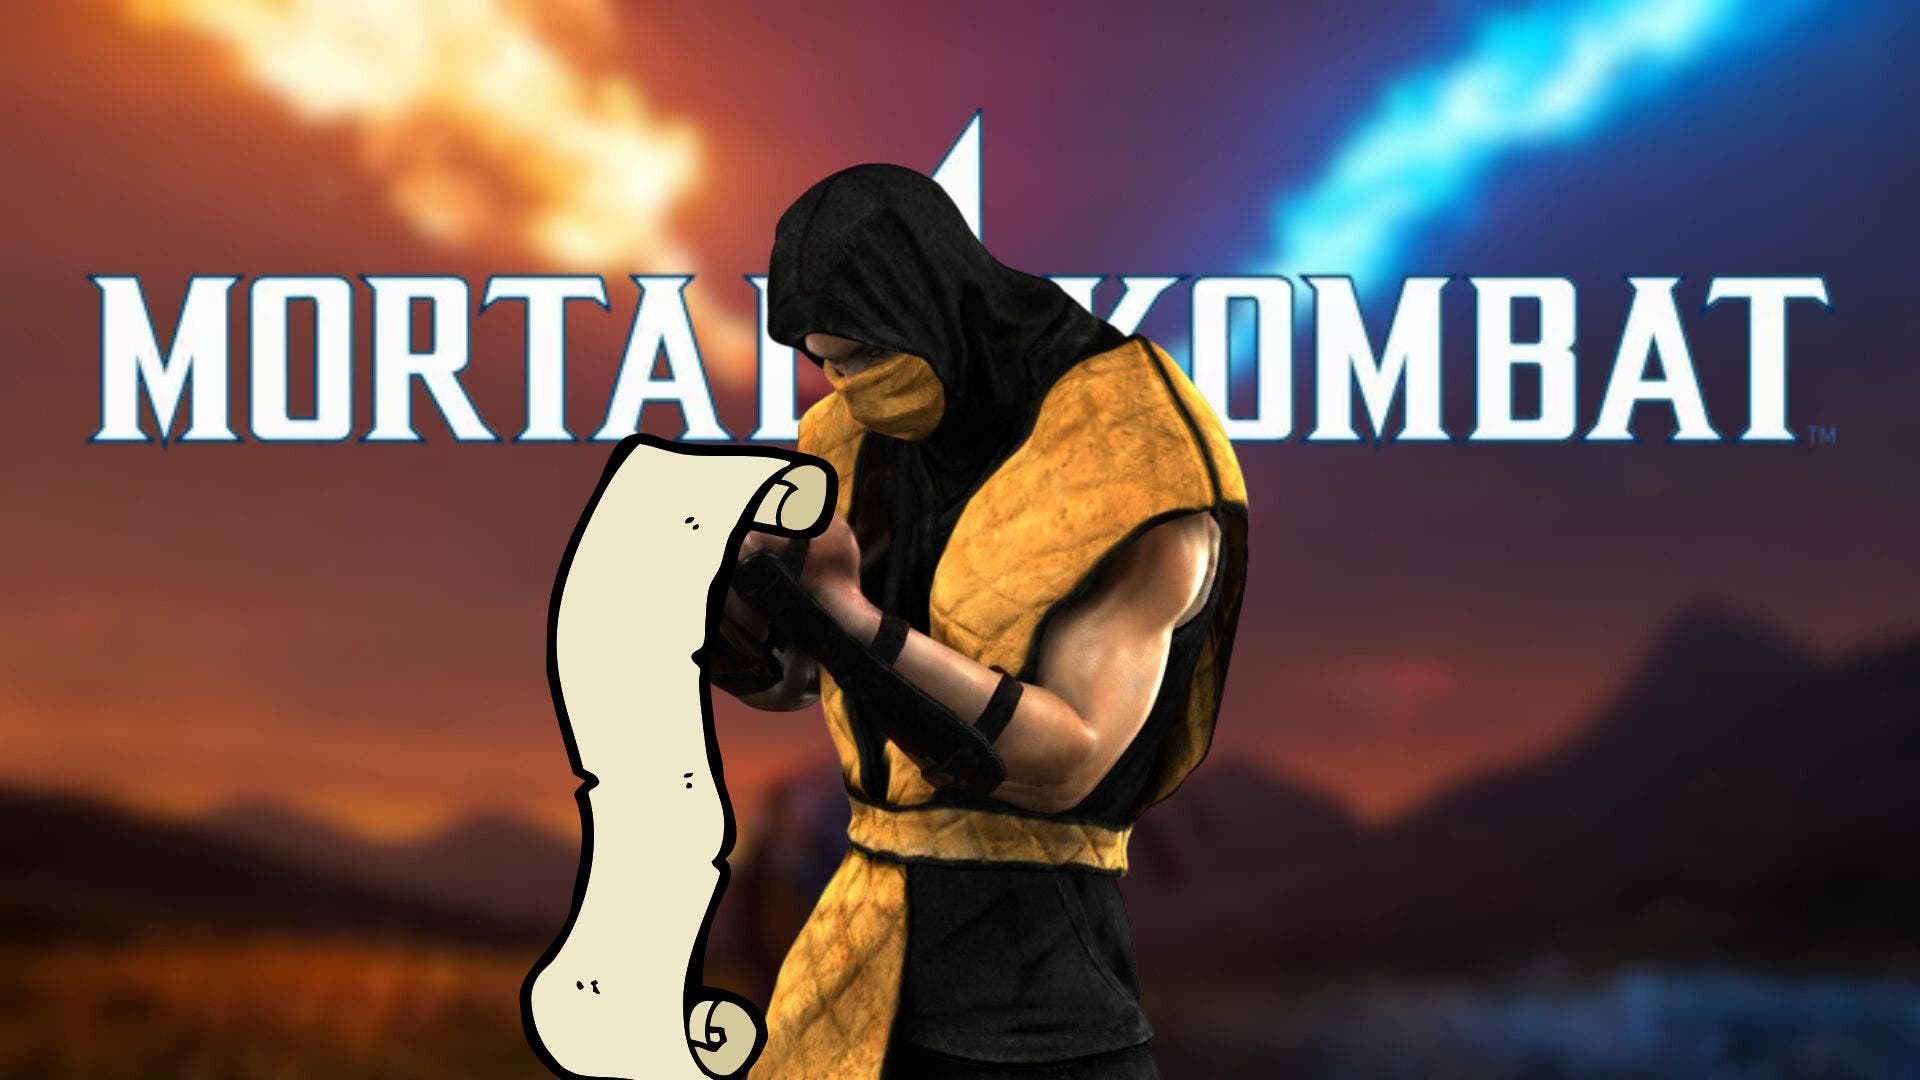 Mortal Kombat 1 para PS5, Xbox, Switch y pc. Fecha de lanzamiento